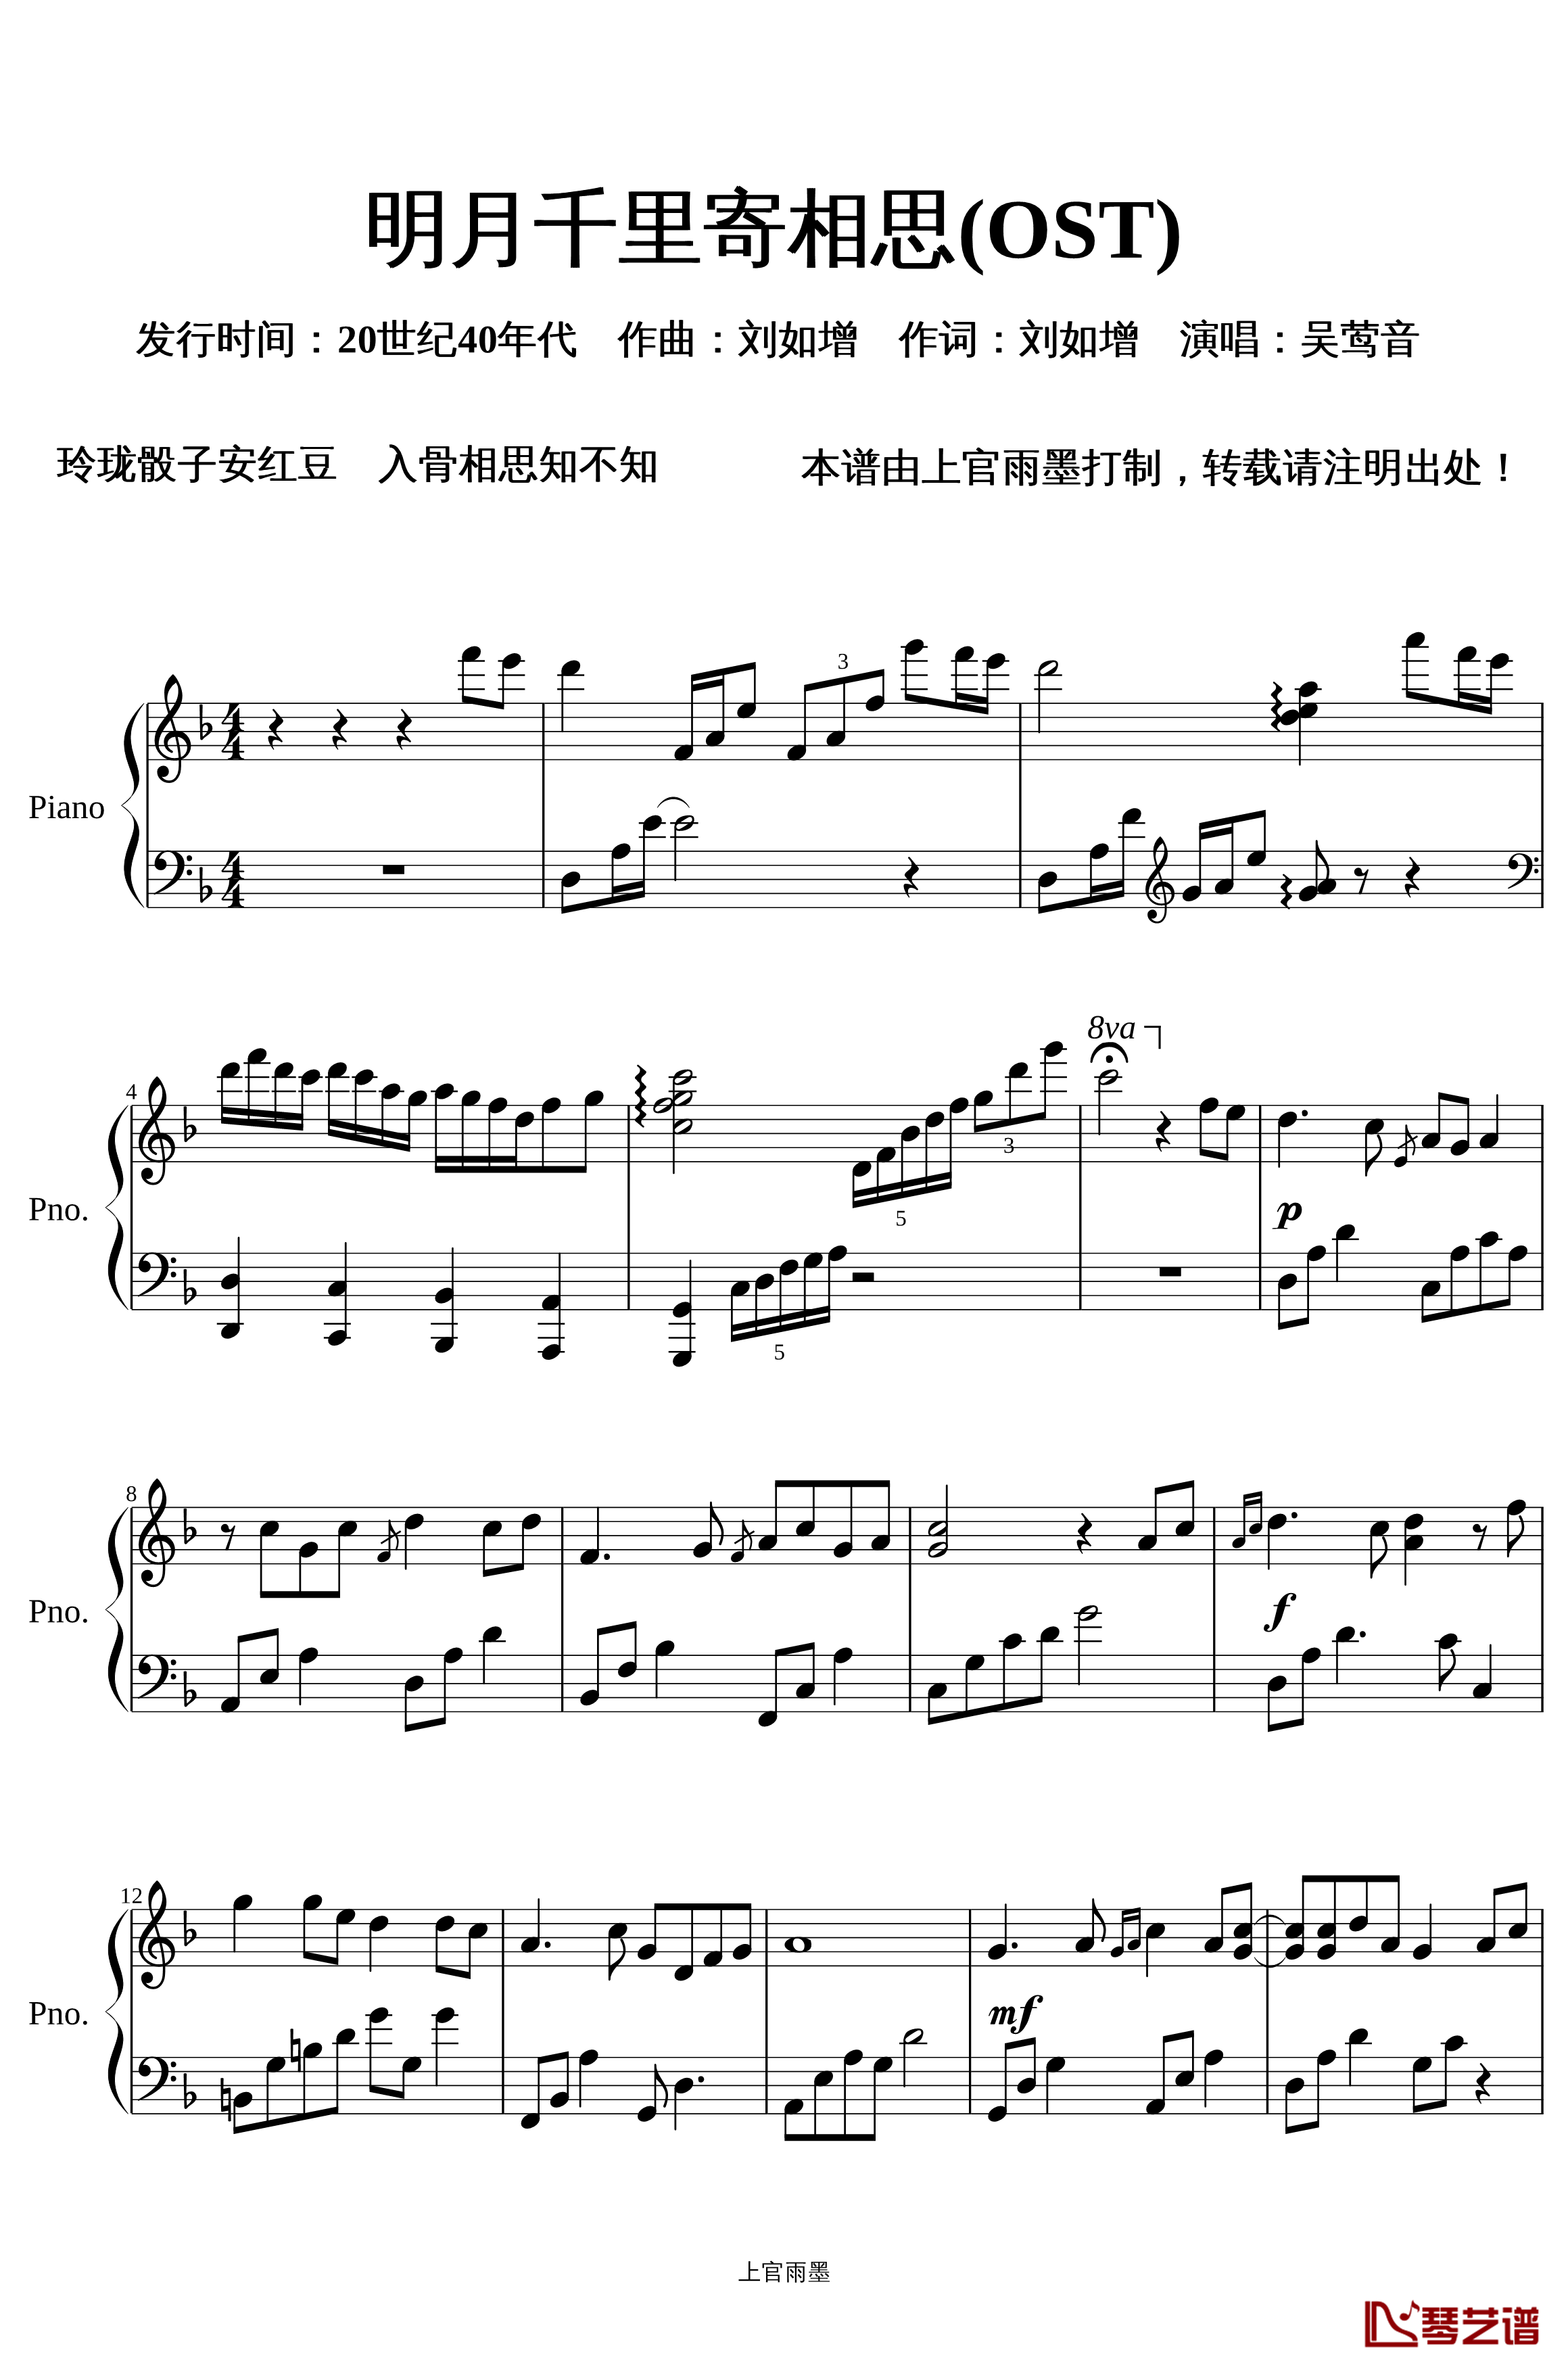 明月千里寄相思钢琴谱-OST-蔡琴